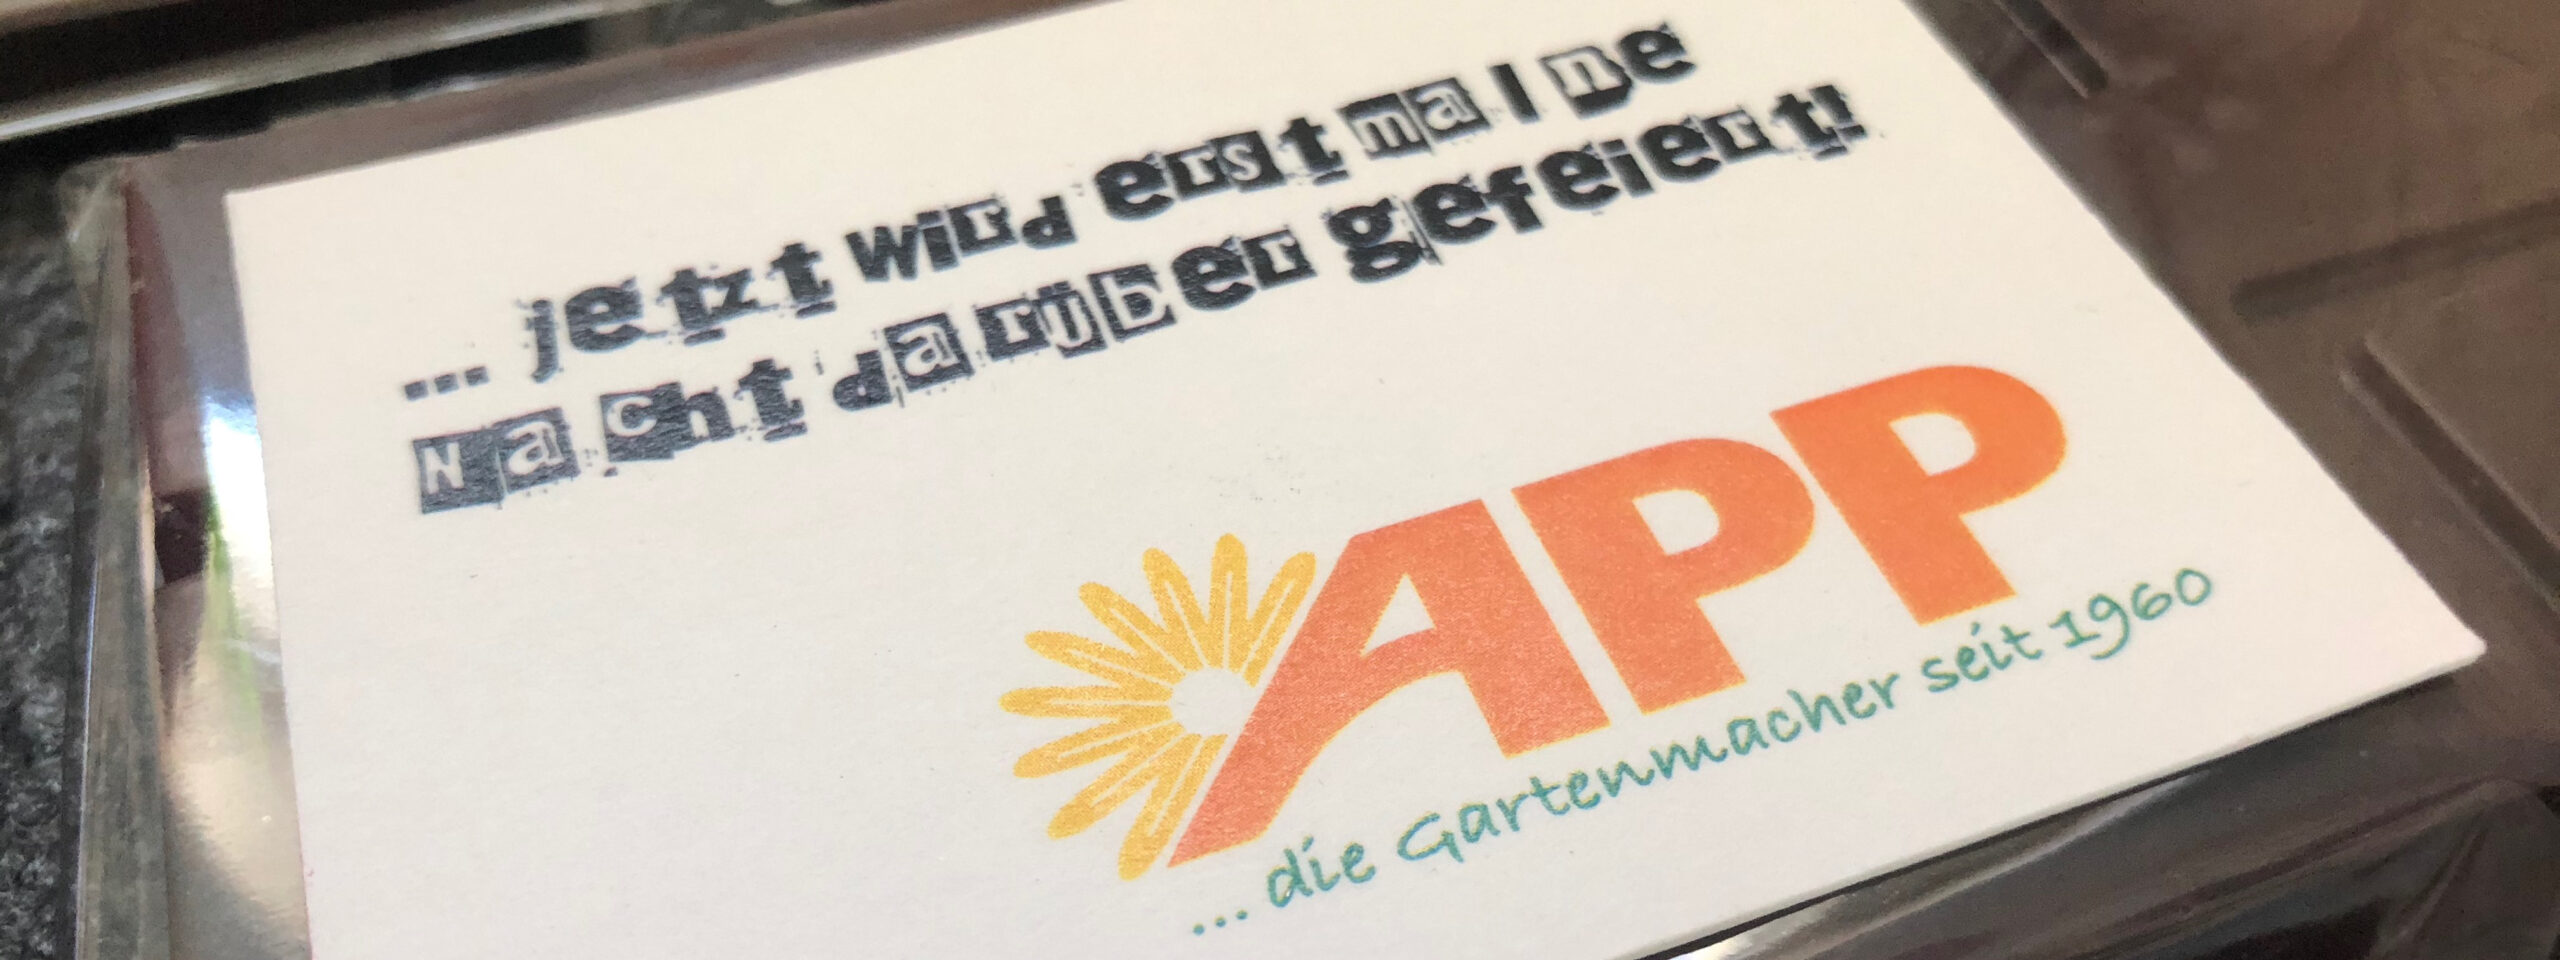 Featured image for “APP … die gartenmacher seit 1960 feiern jubiläum”